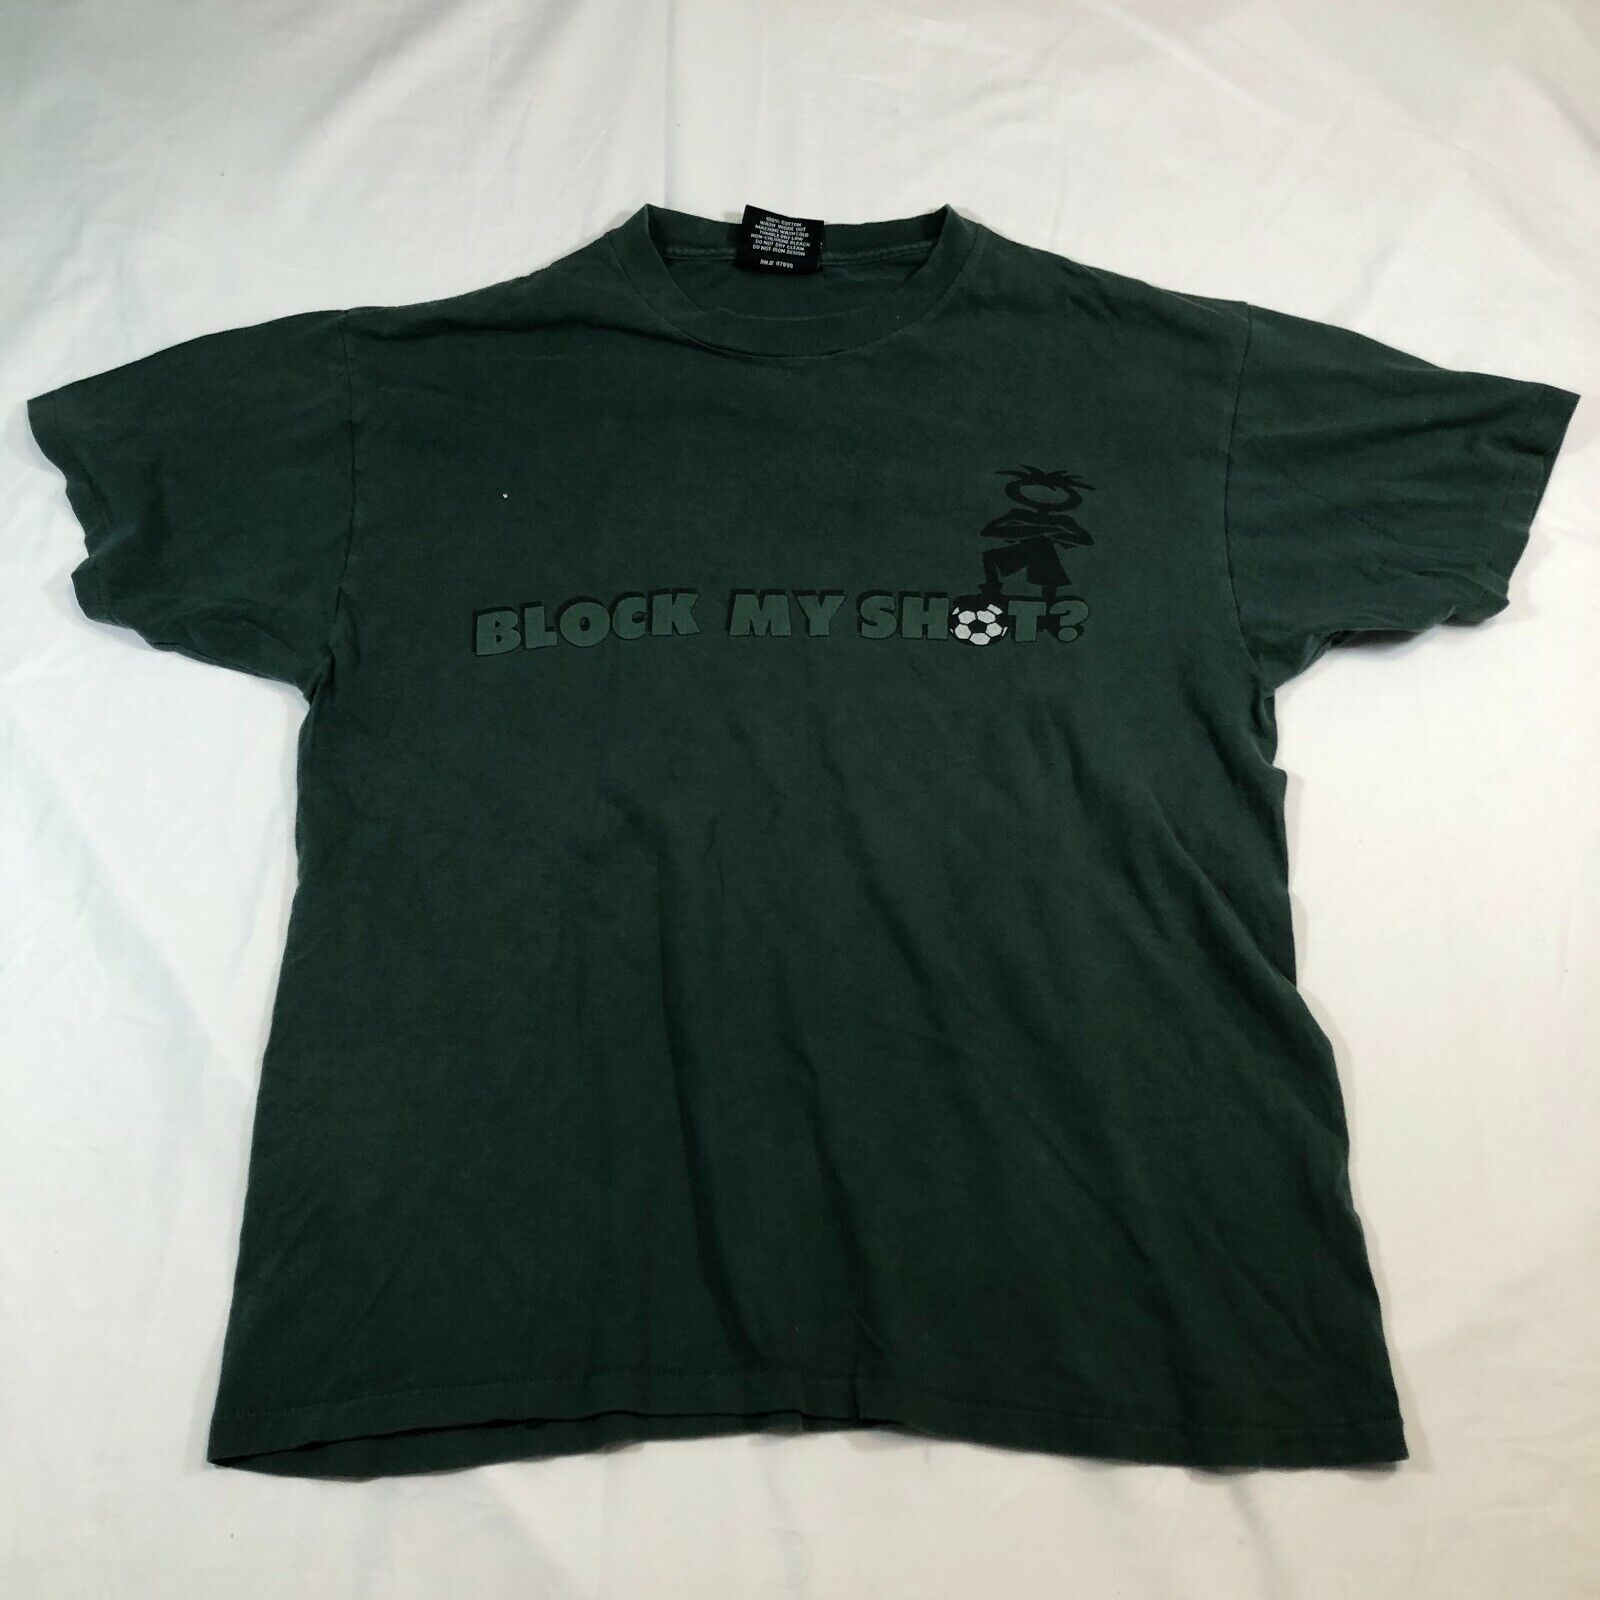 Vintage OGIO Shirt Mens L Dark Green Short Sleeve Cotton Soccer Football 90s - $15.88